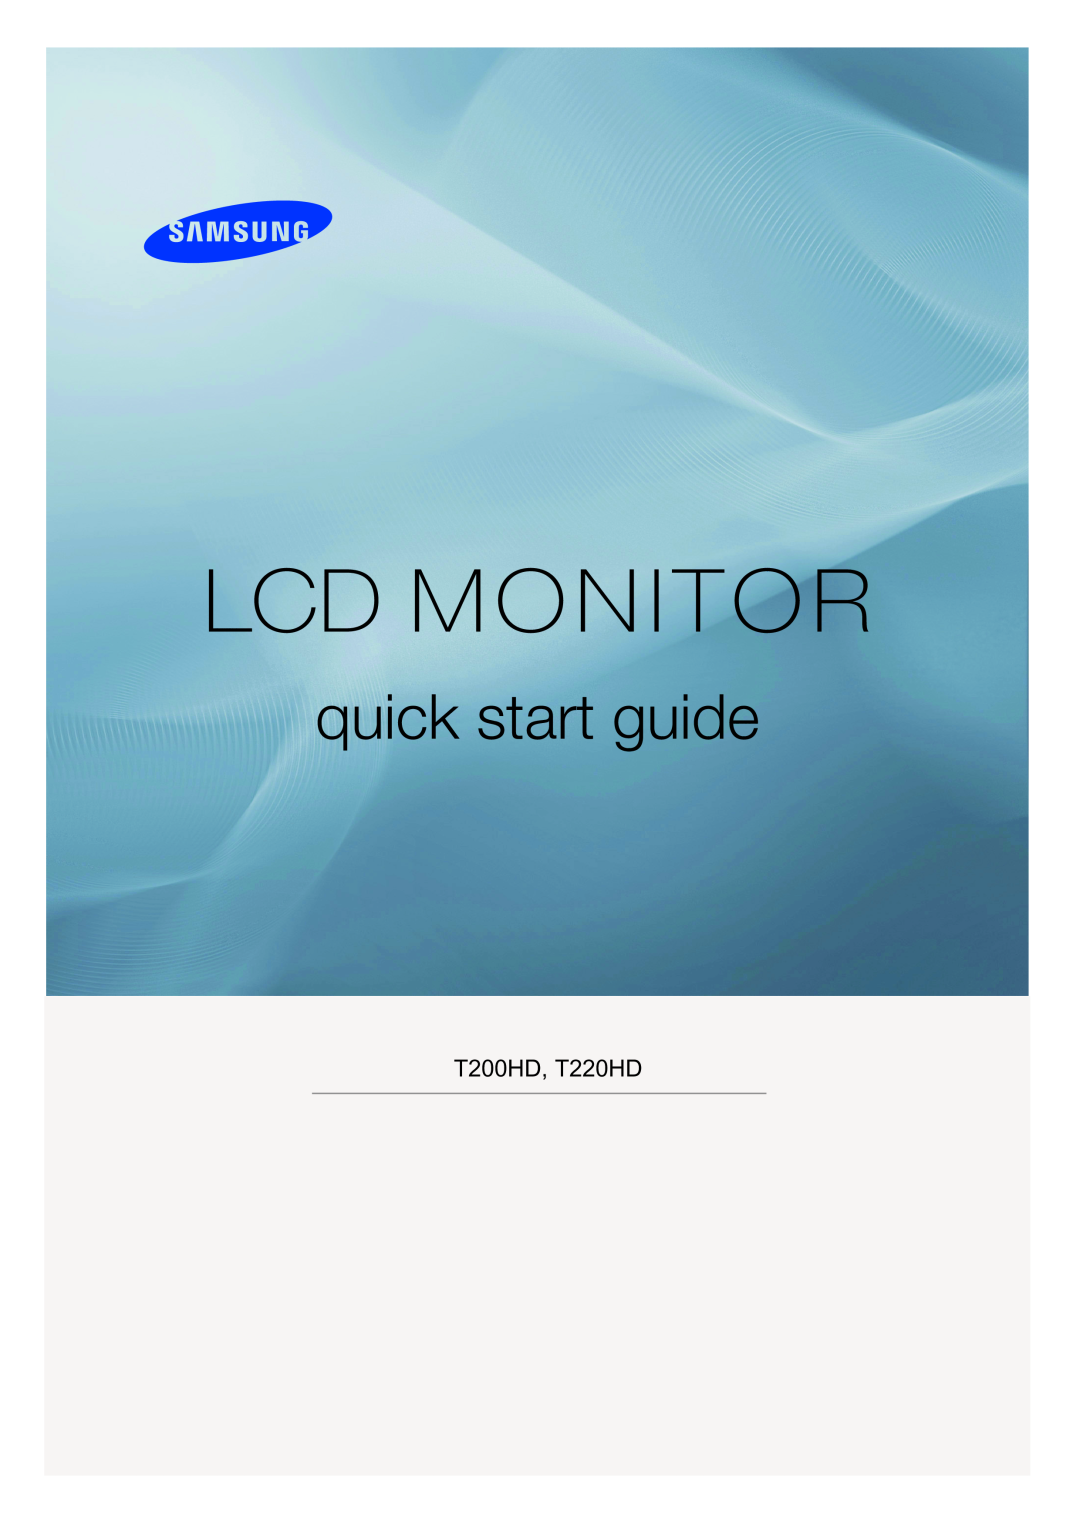 Samsung LS24TDVSUV/EN, LS20TDVSUV/EN, LS24TDDSUV/EN manual Lcd Monitor, quick start guide, T200HD/T220HD/T240HD/T260HD 